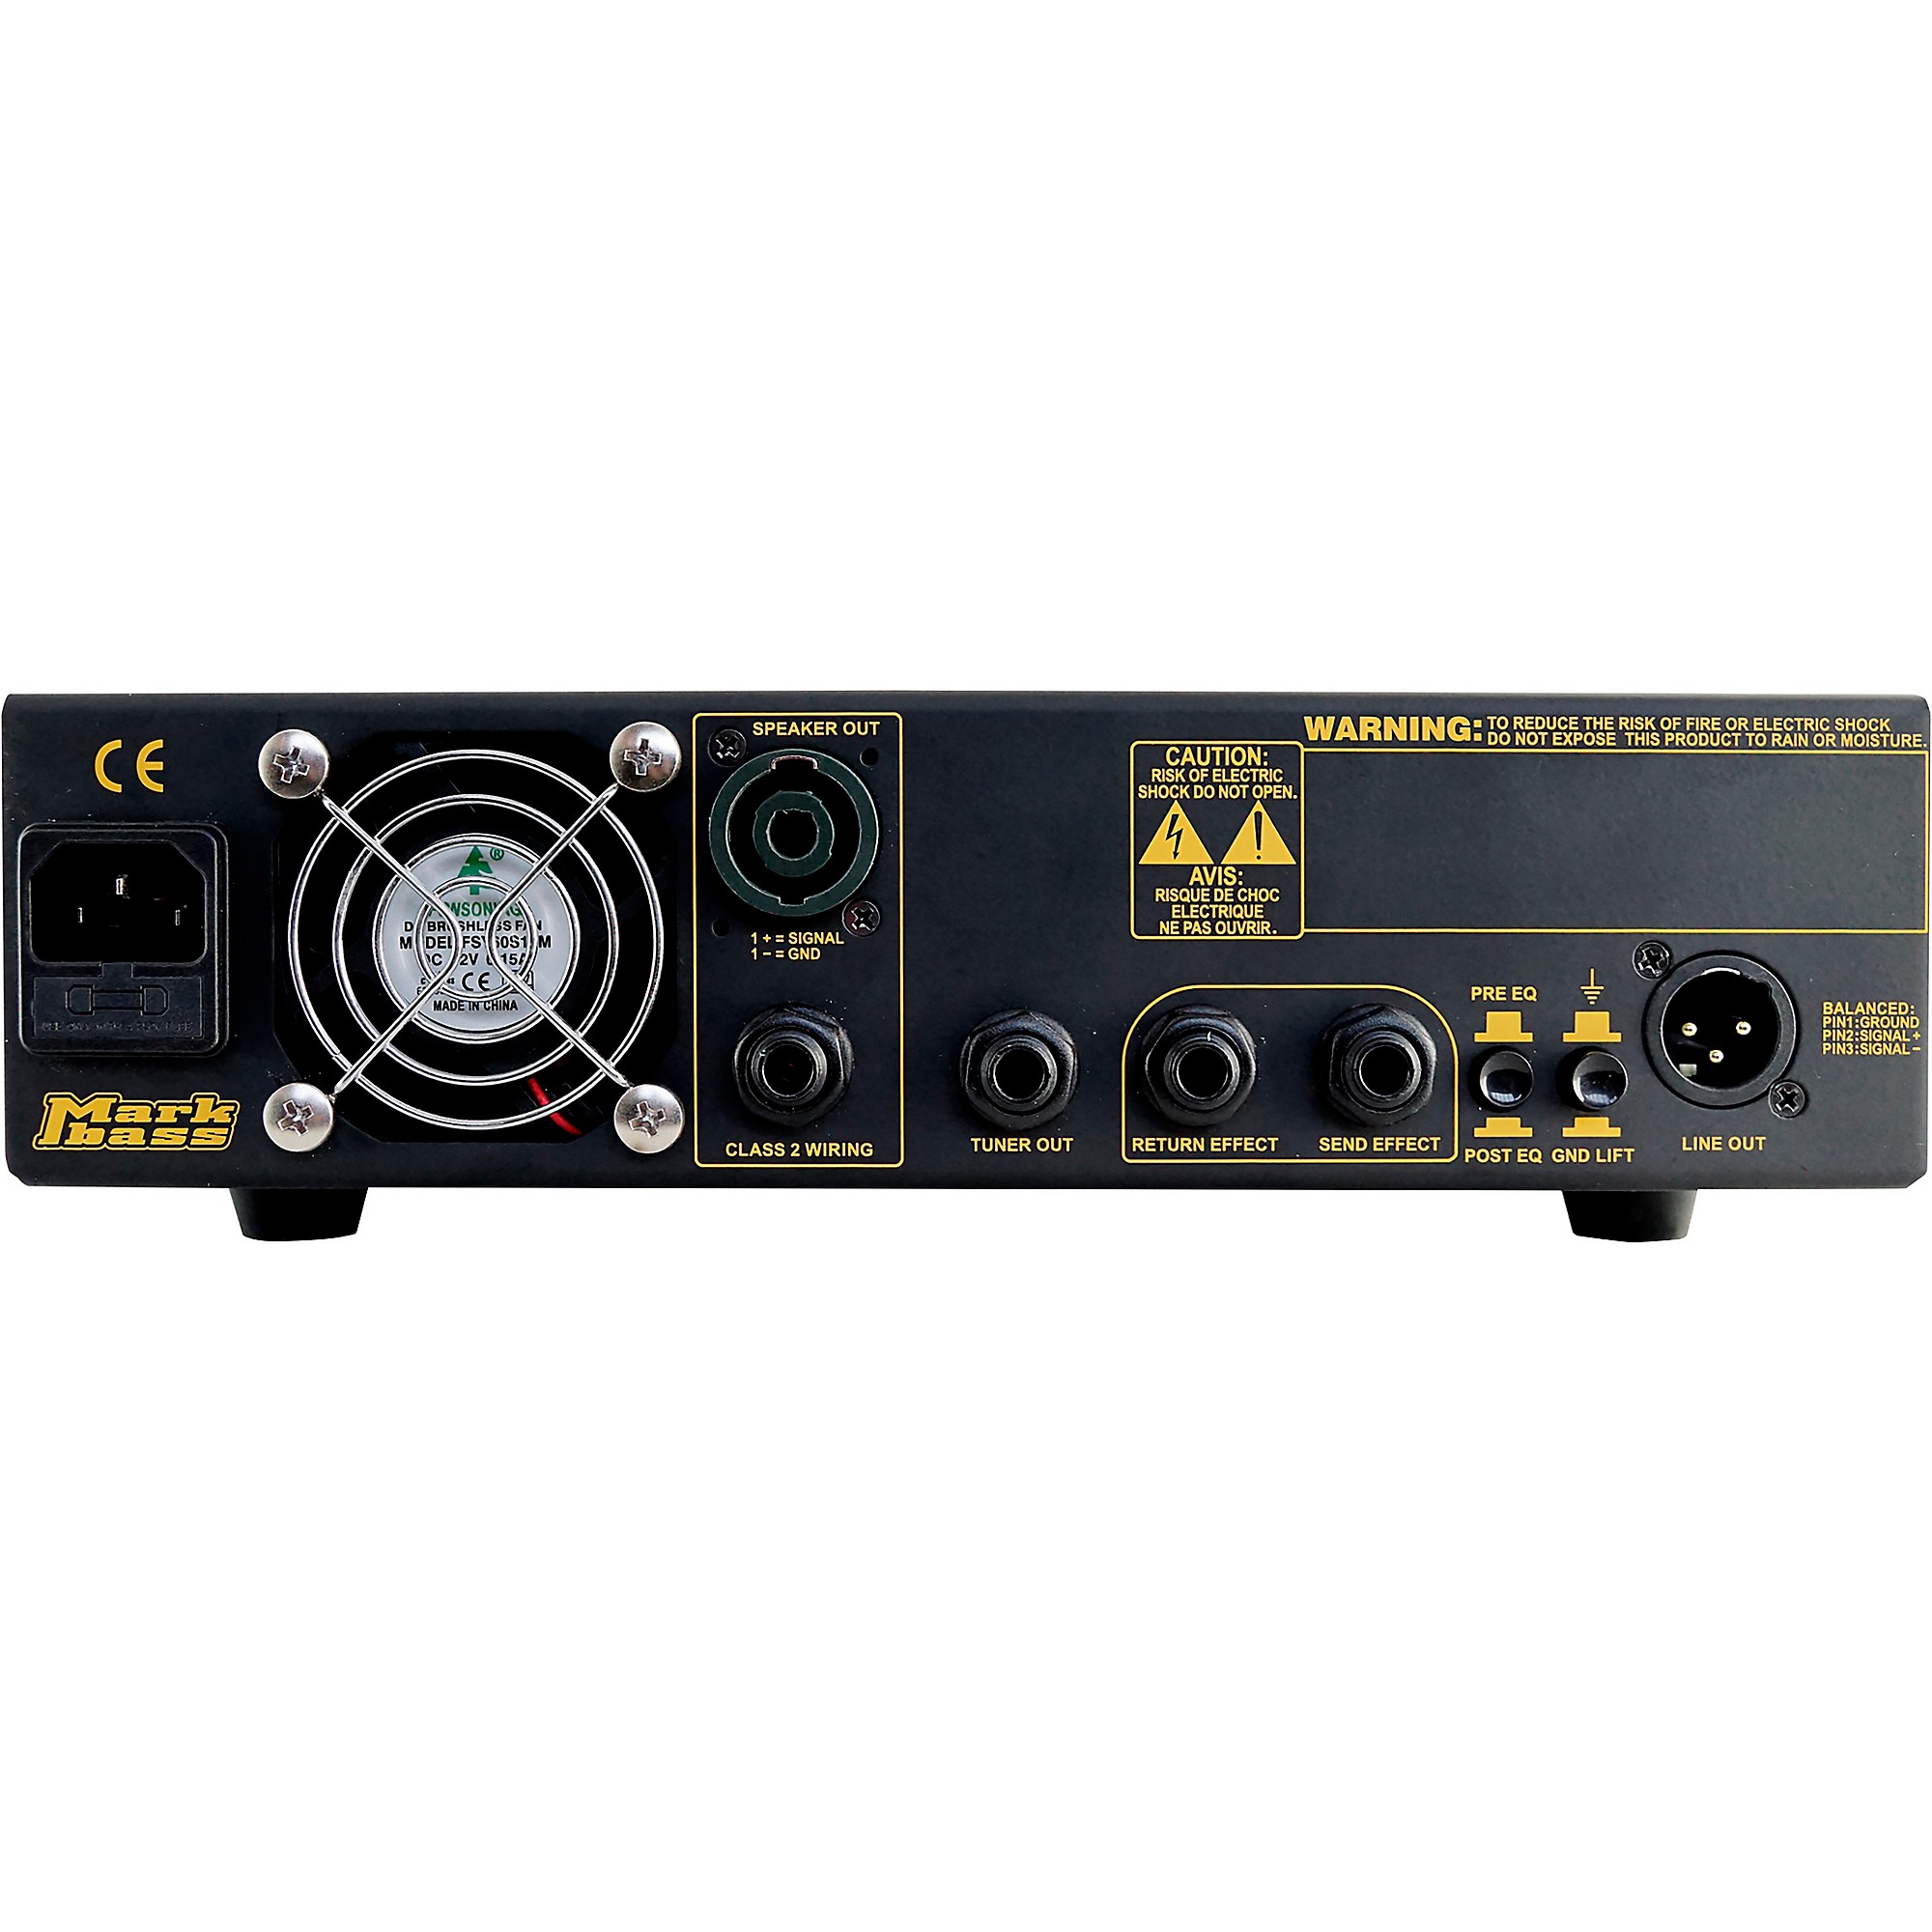 Markbass Little Mark IV 500W Bass Amplifier Head Black